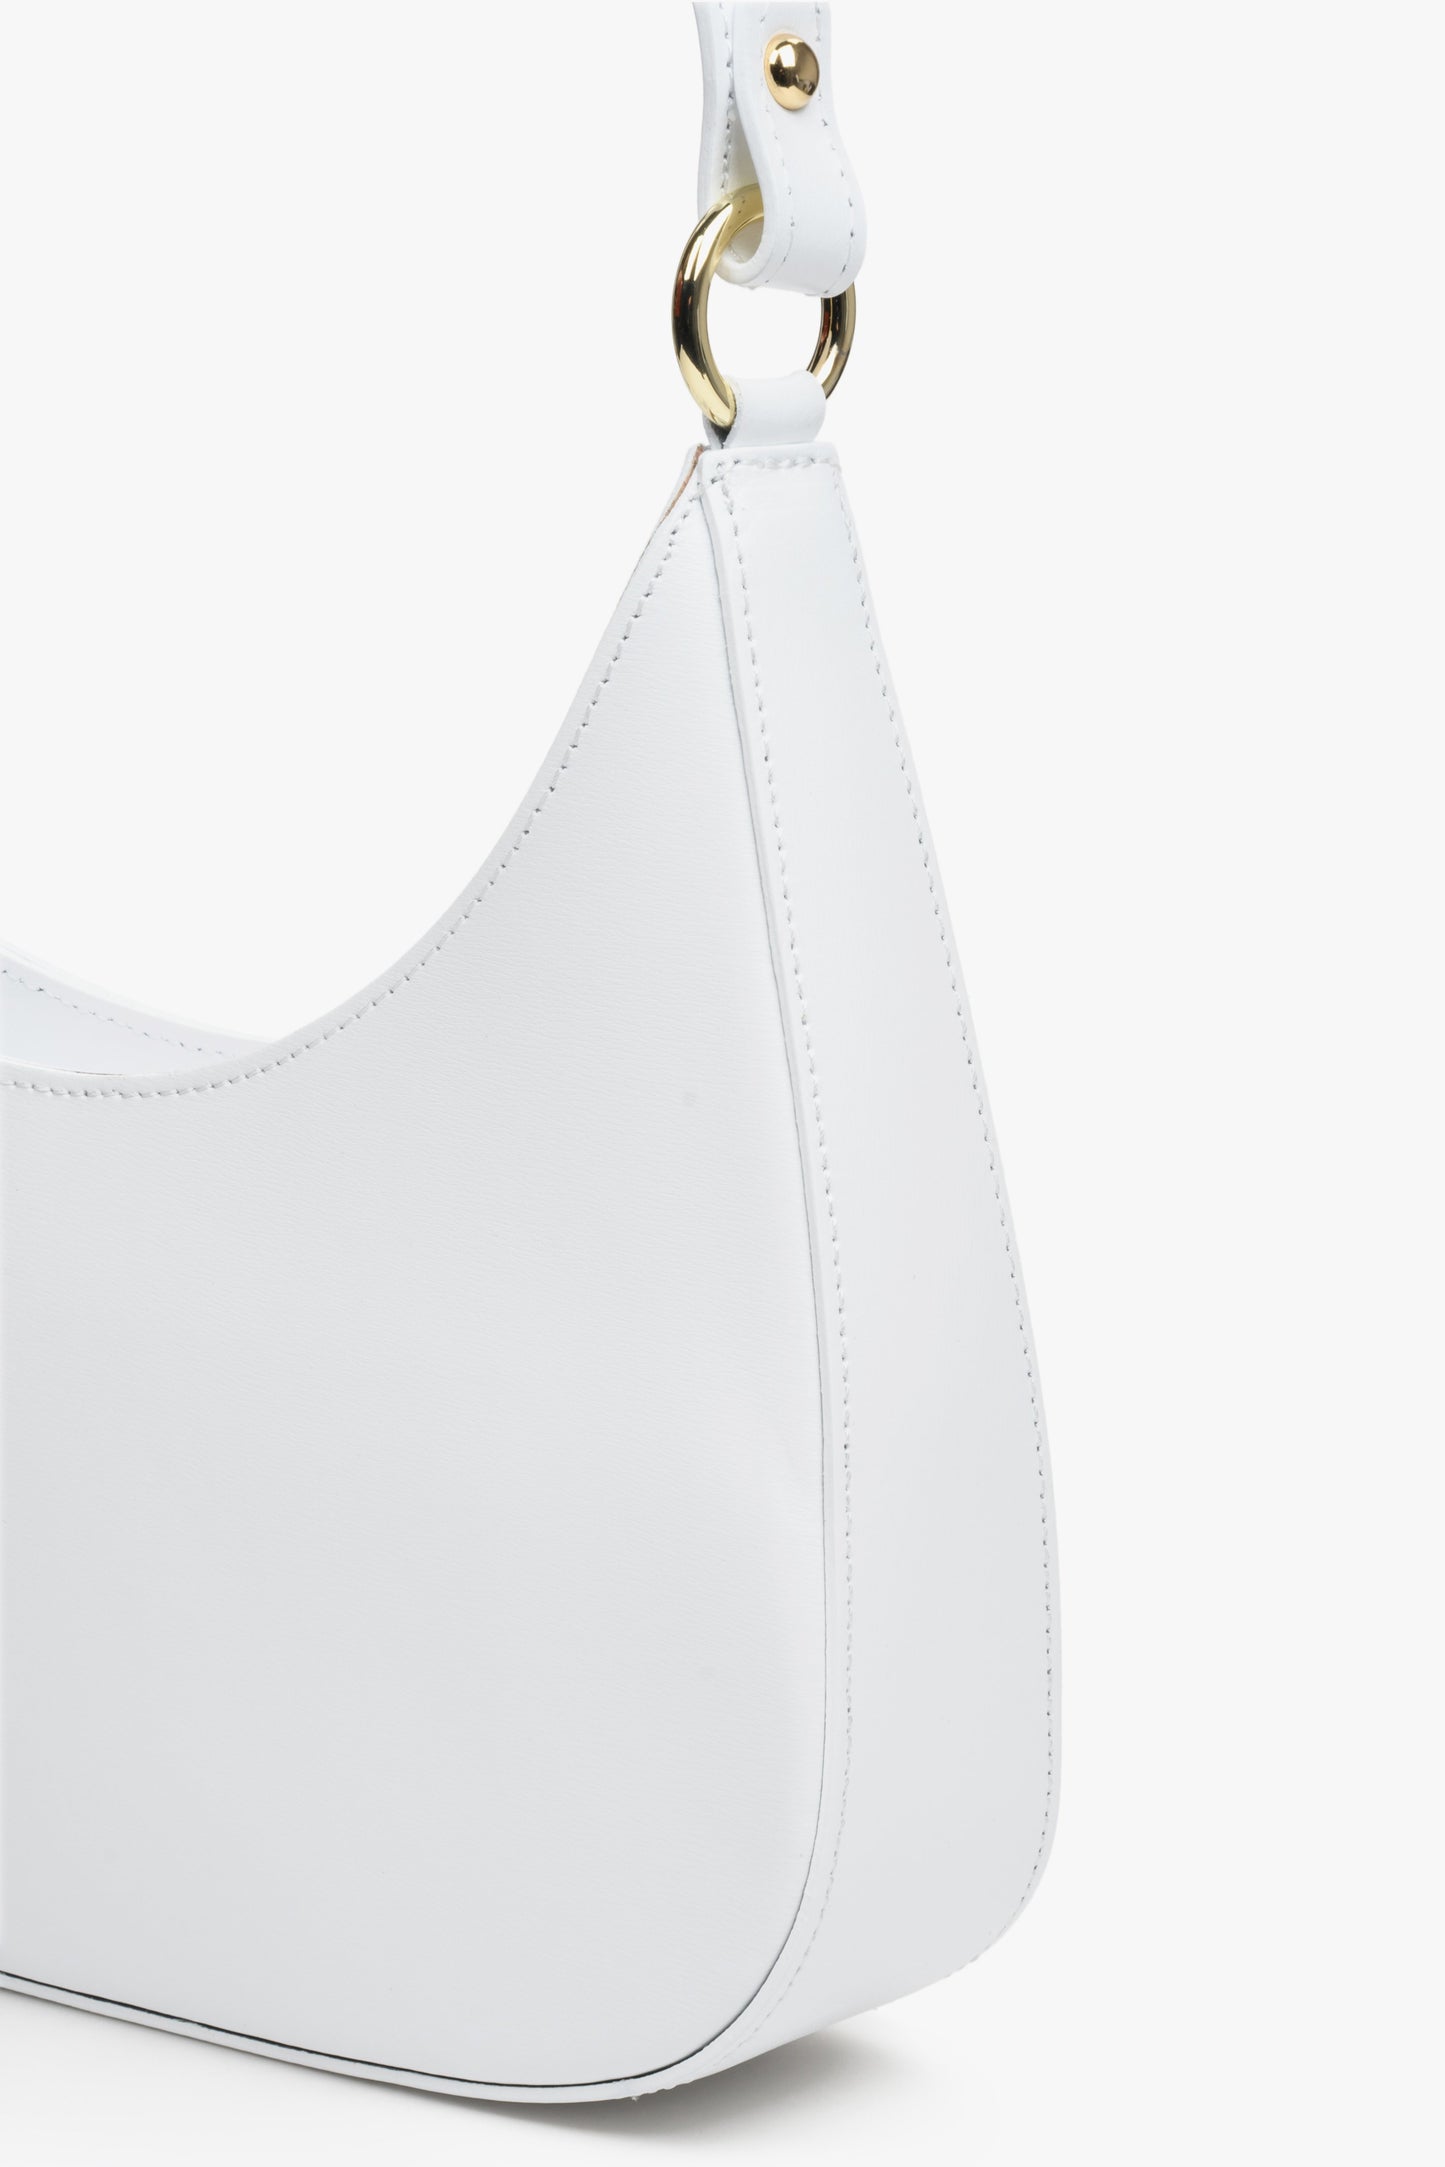 Torebka damska z włoskiej skóry naturalnej typu shoulder bag w kolorze białym.